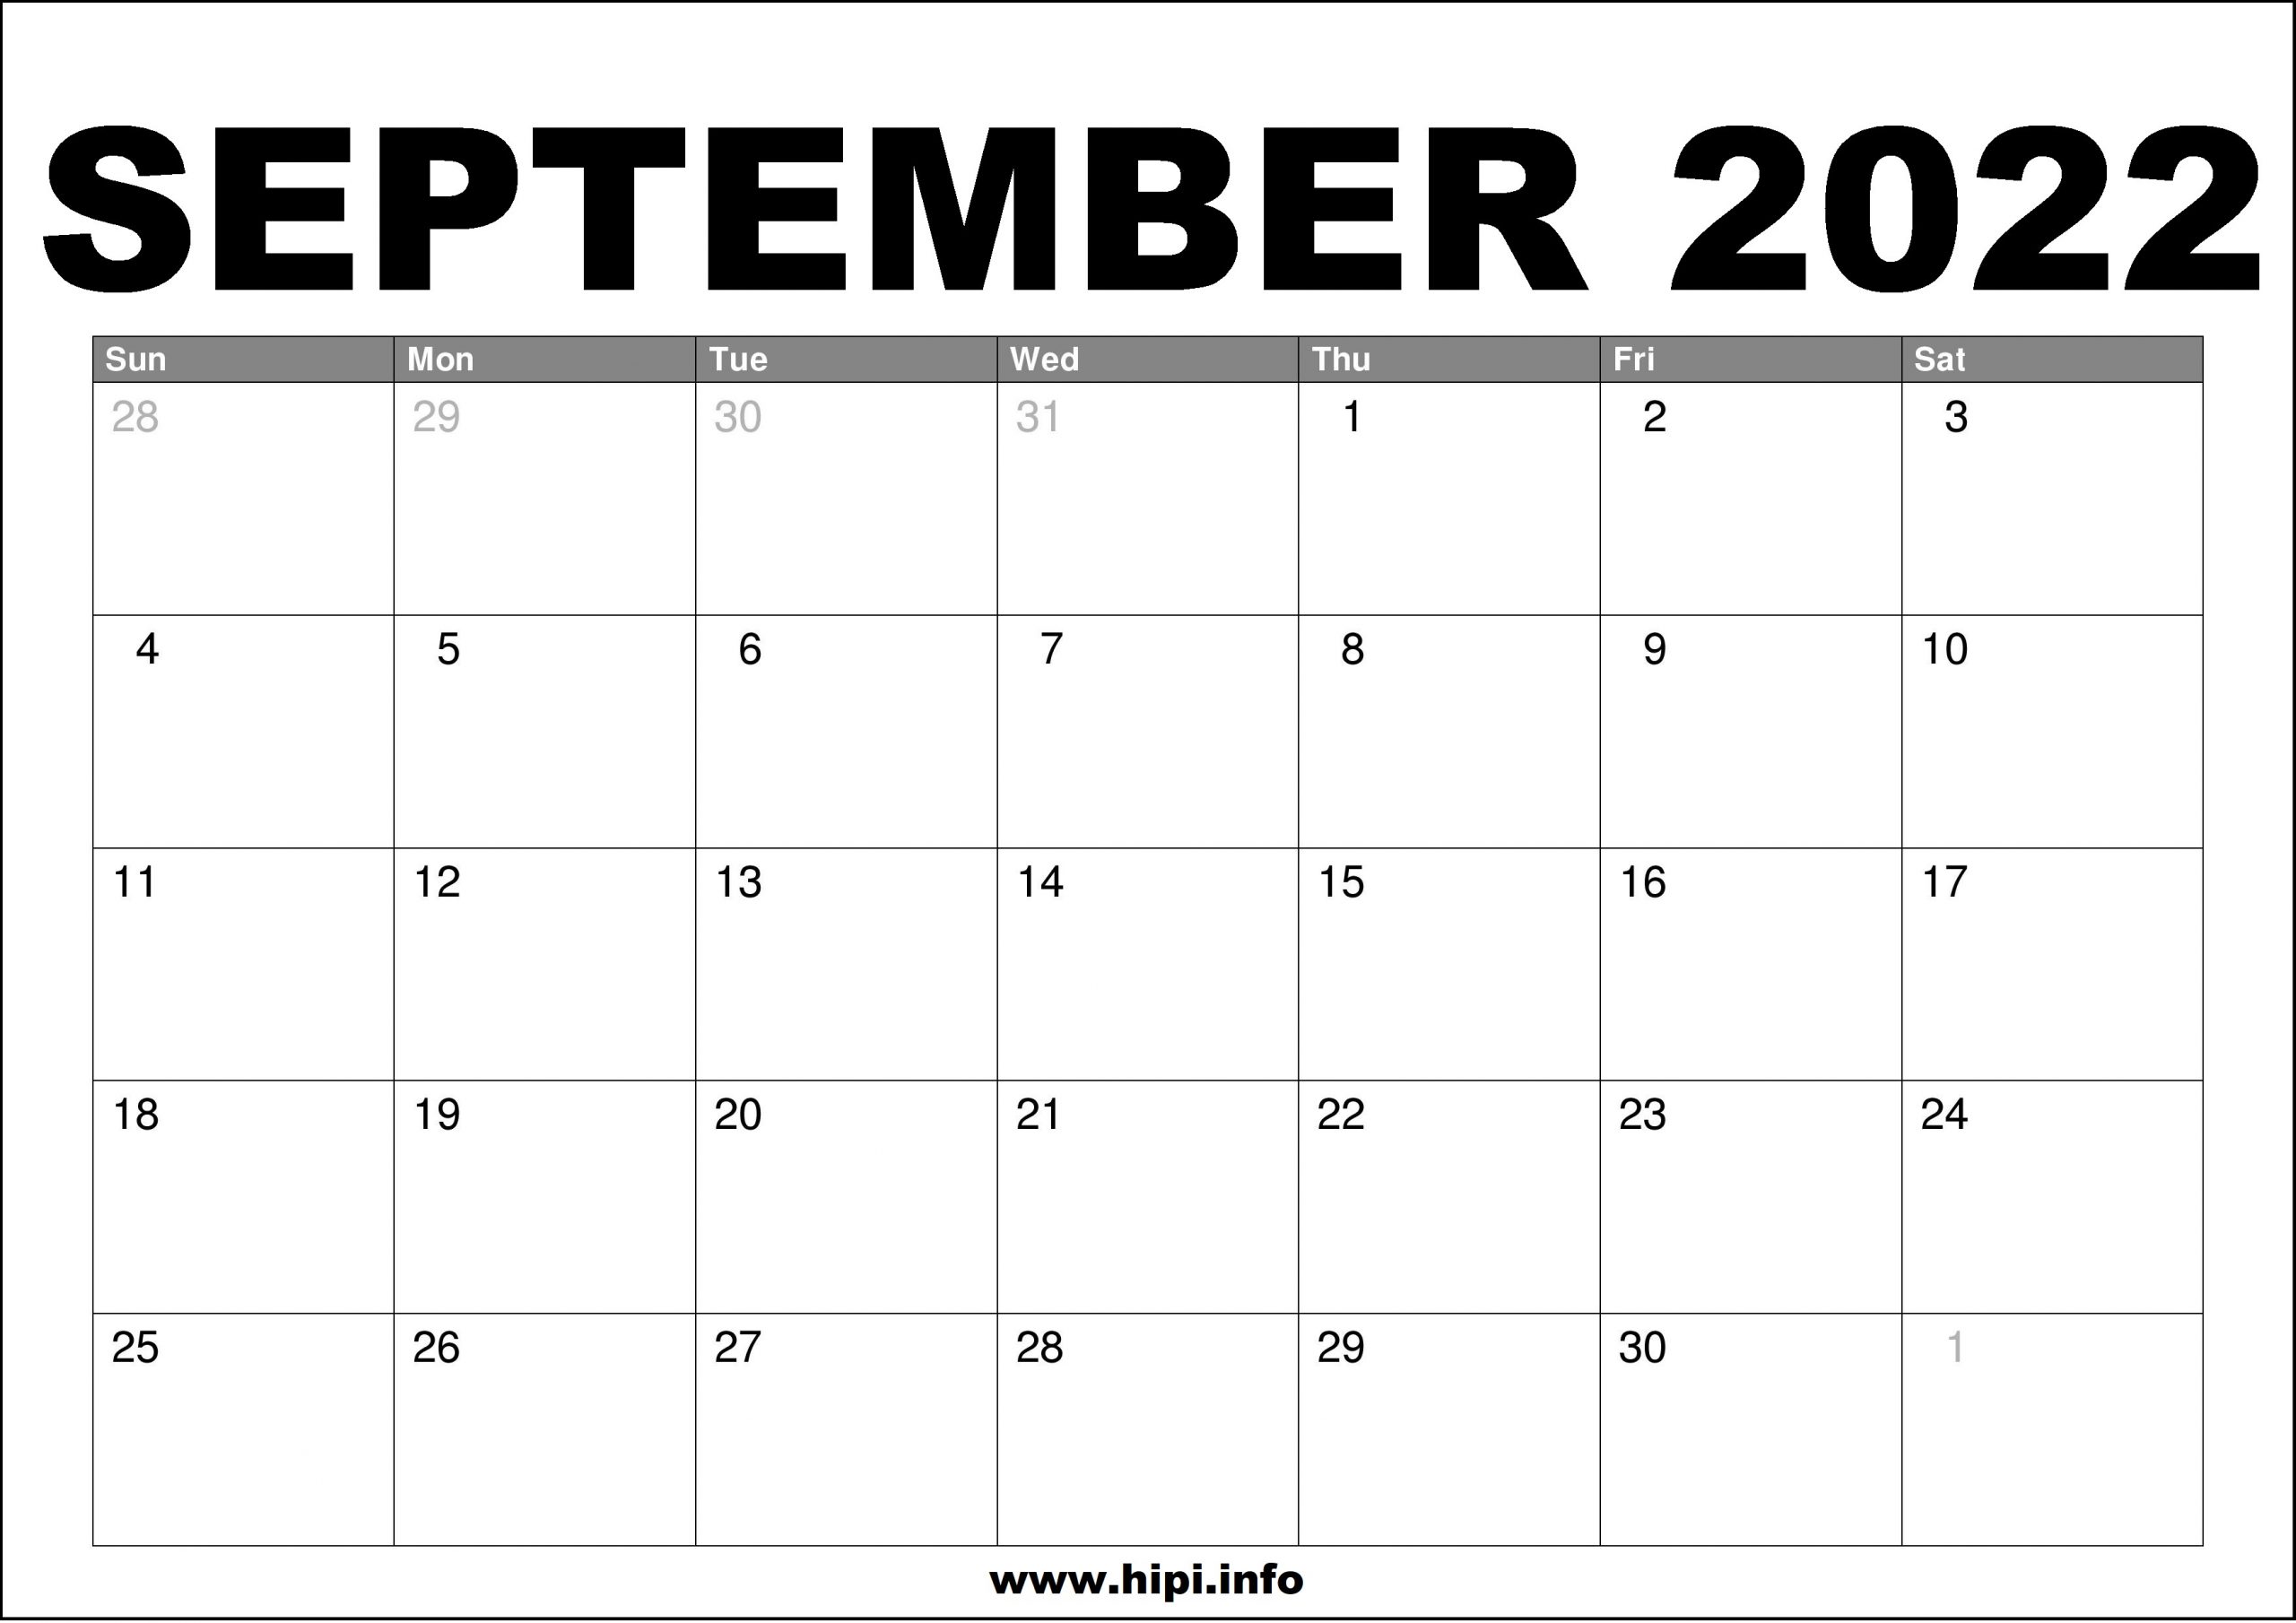 September Calendar 2022 Printable September 2022 Calendar Printable Free - Hipi.info | Calendars Printable  Free